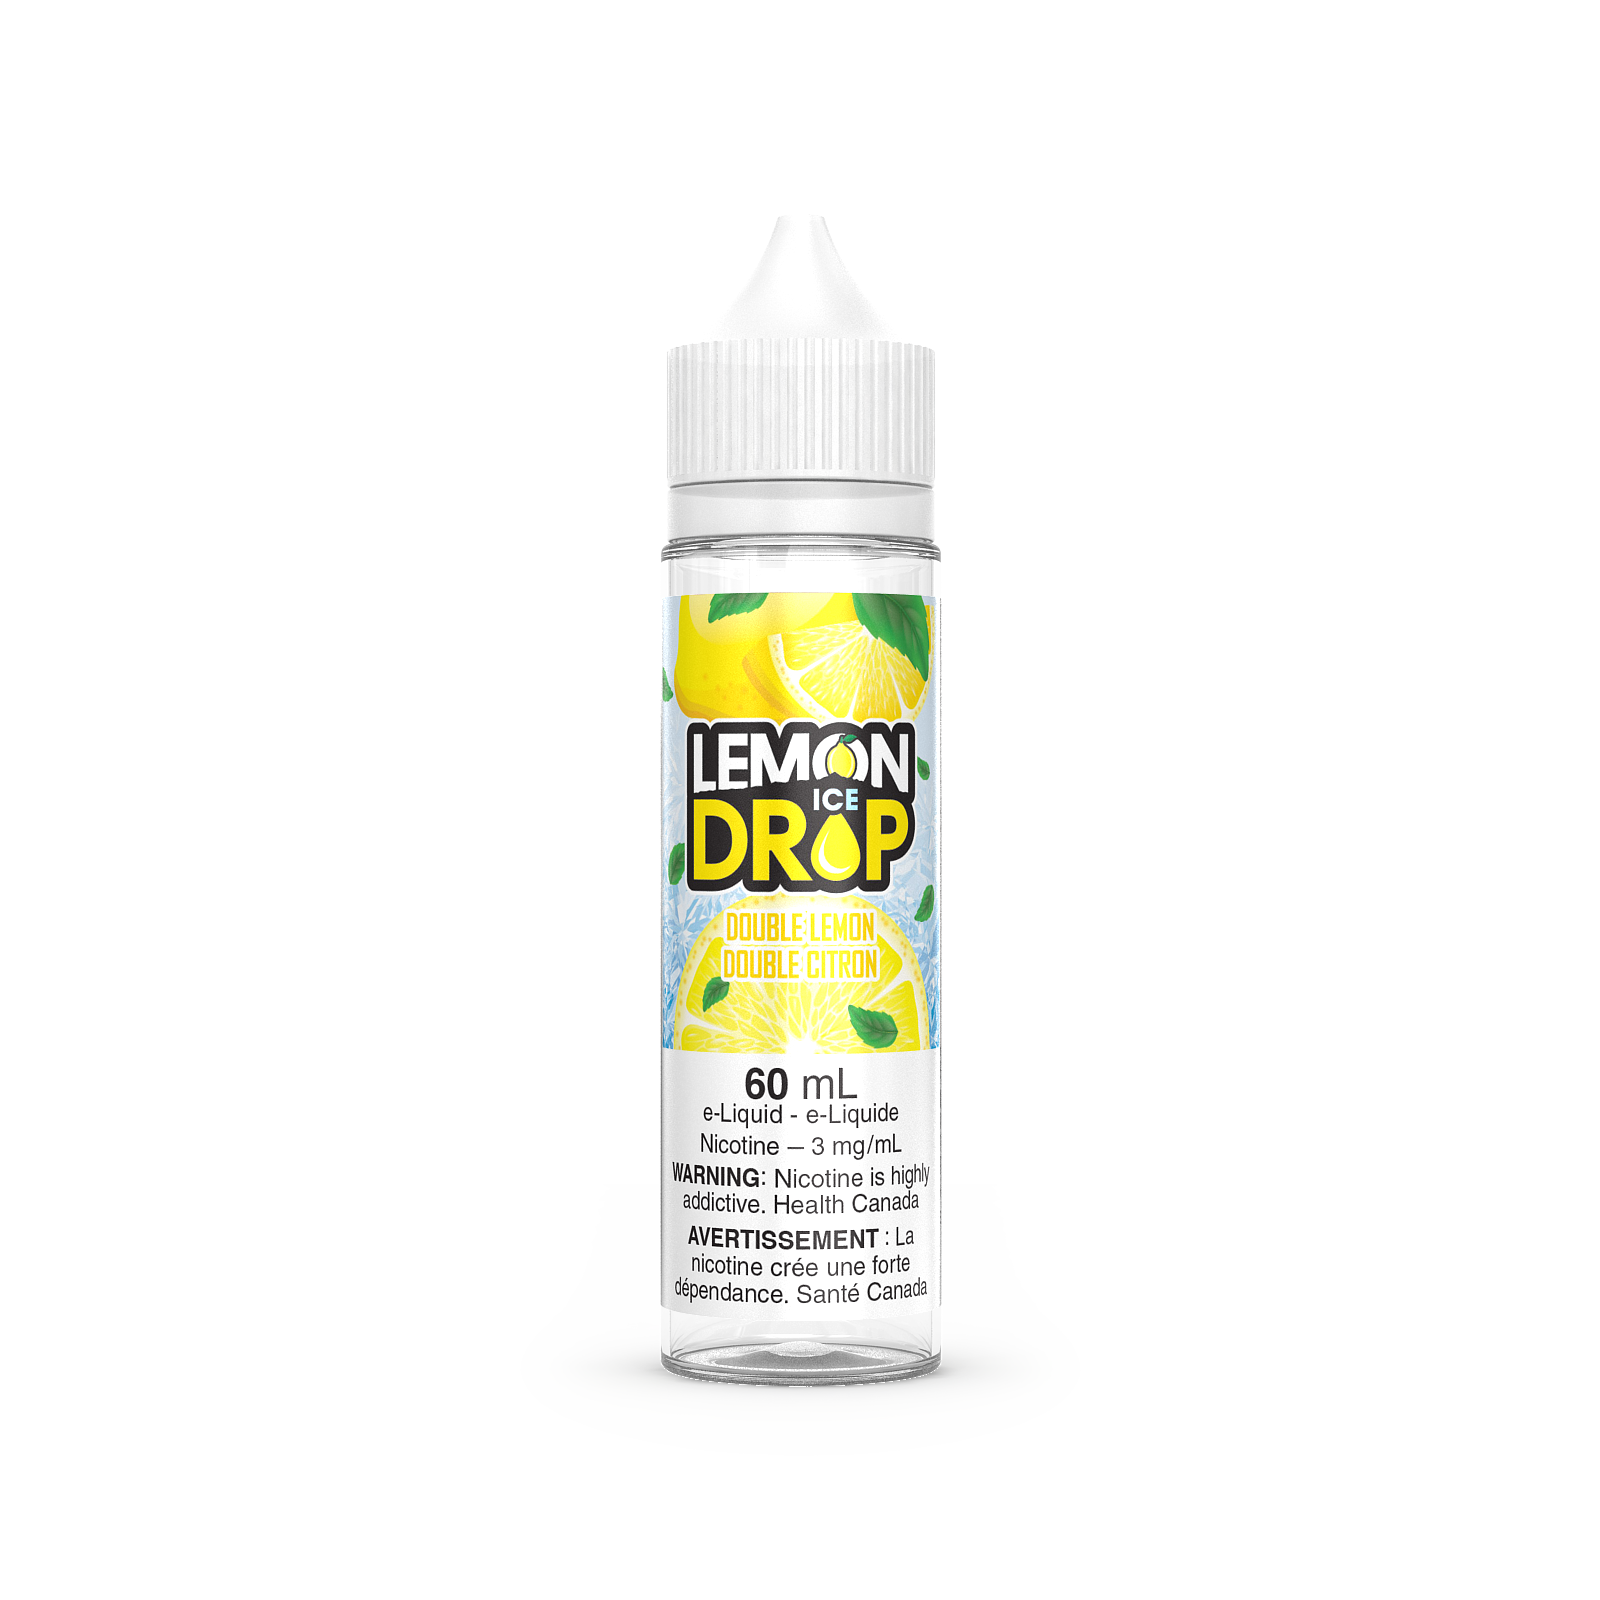 Double Lemon - Lemon Drop ICE - 60ml - FREE BASE - E-Liquid